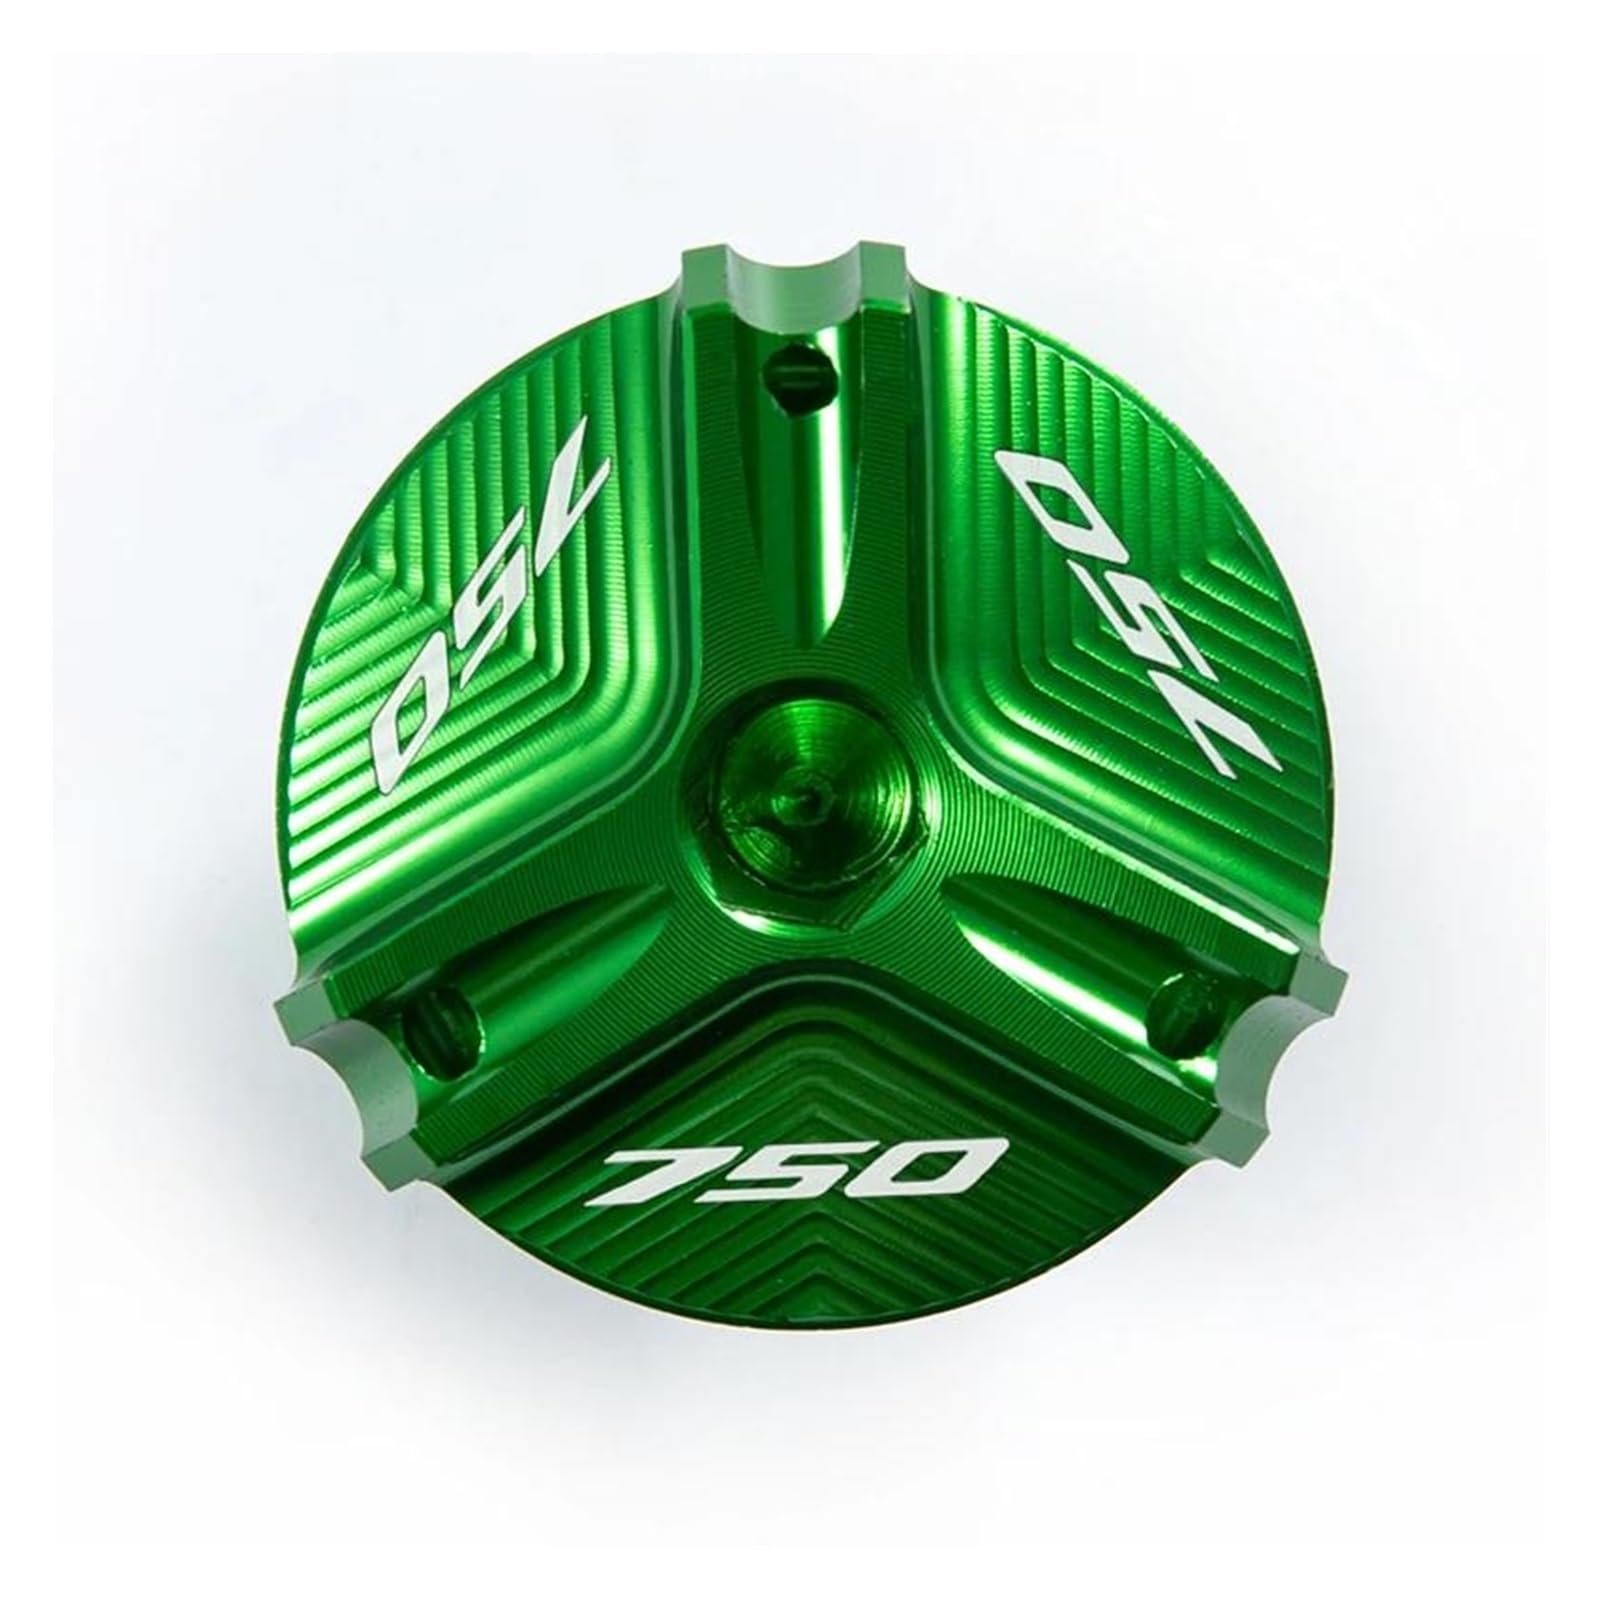 Öleinfüllschutzkappe Für HO&NDA Forza 750 FORZA 750 2020 2021 2022 Motorrad Motoröl Kappe Bolzen Tankdeckel Schutz Zubehör(Green) von QIBOZNG